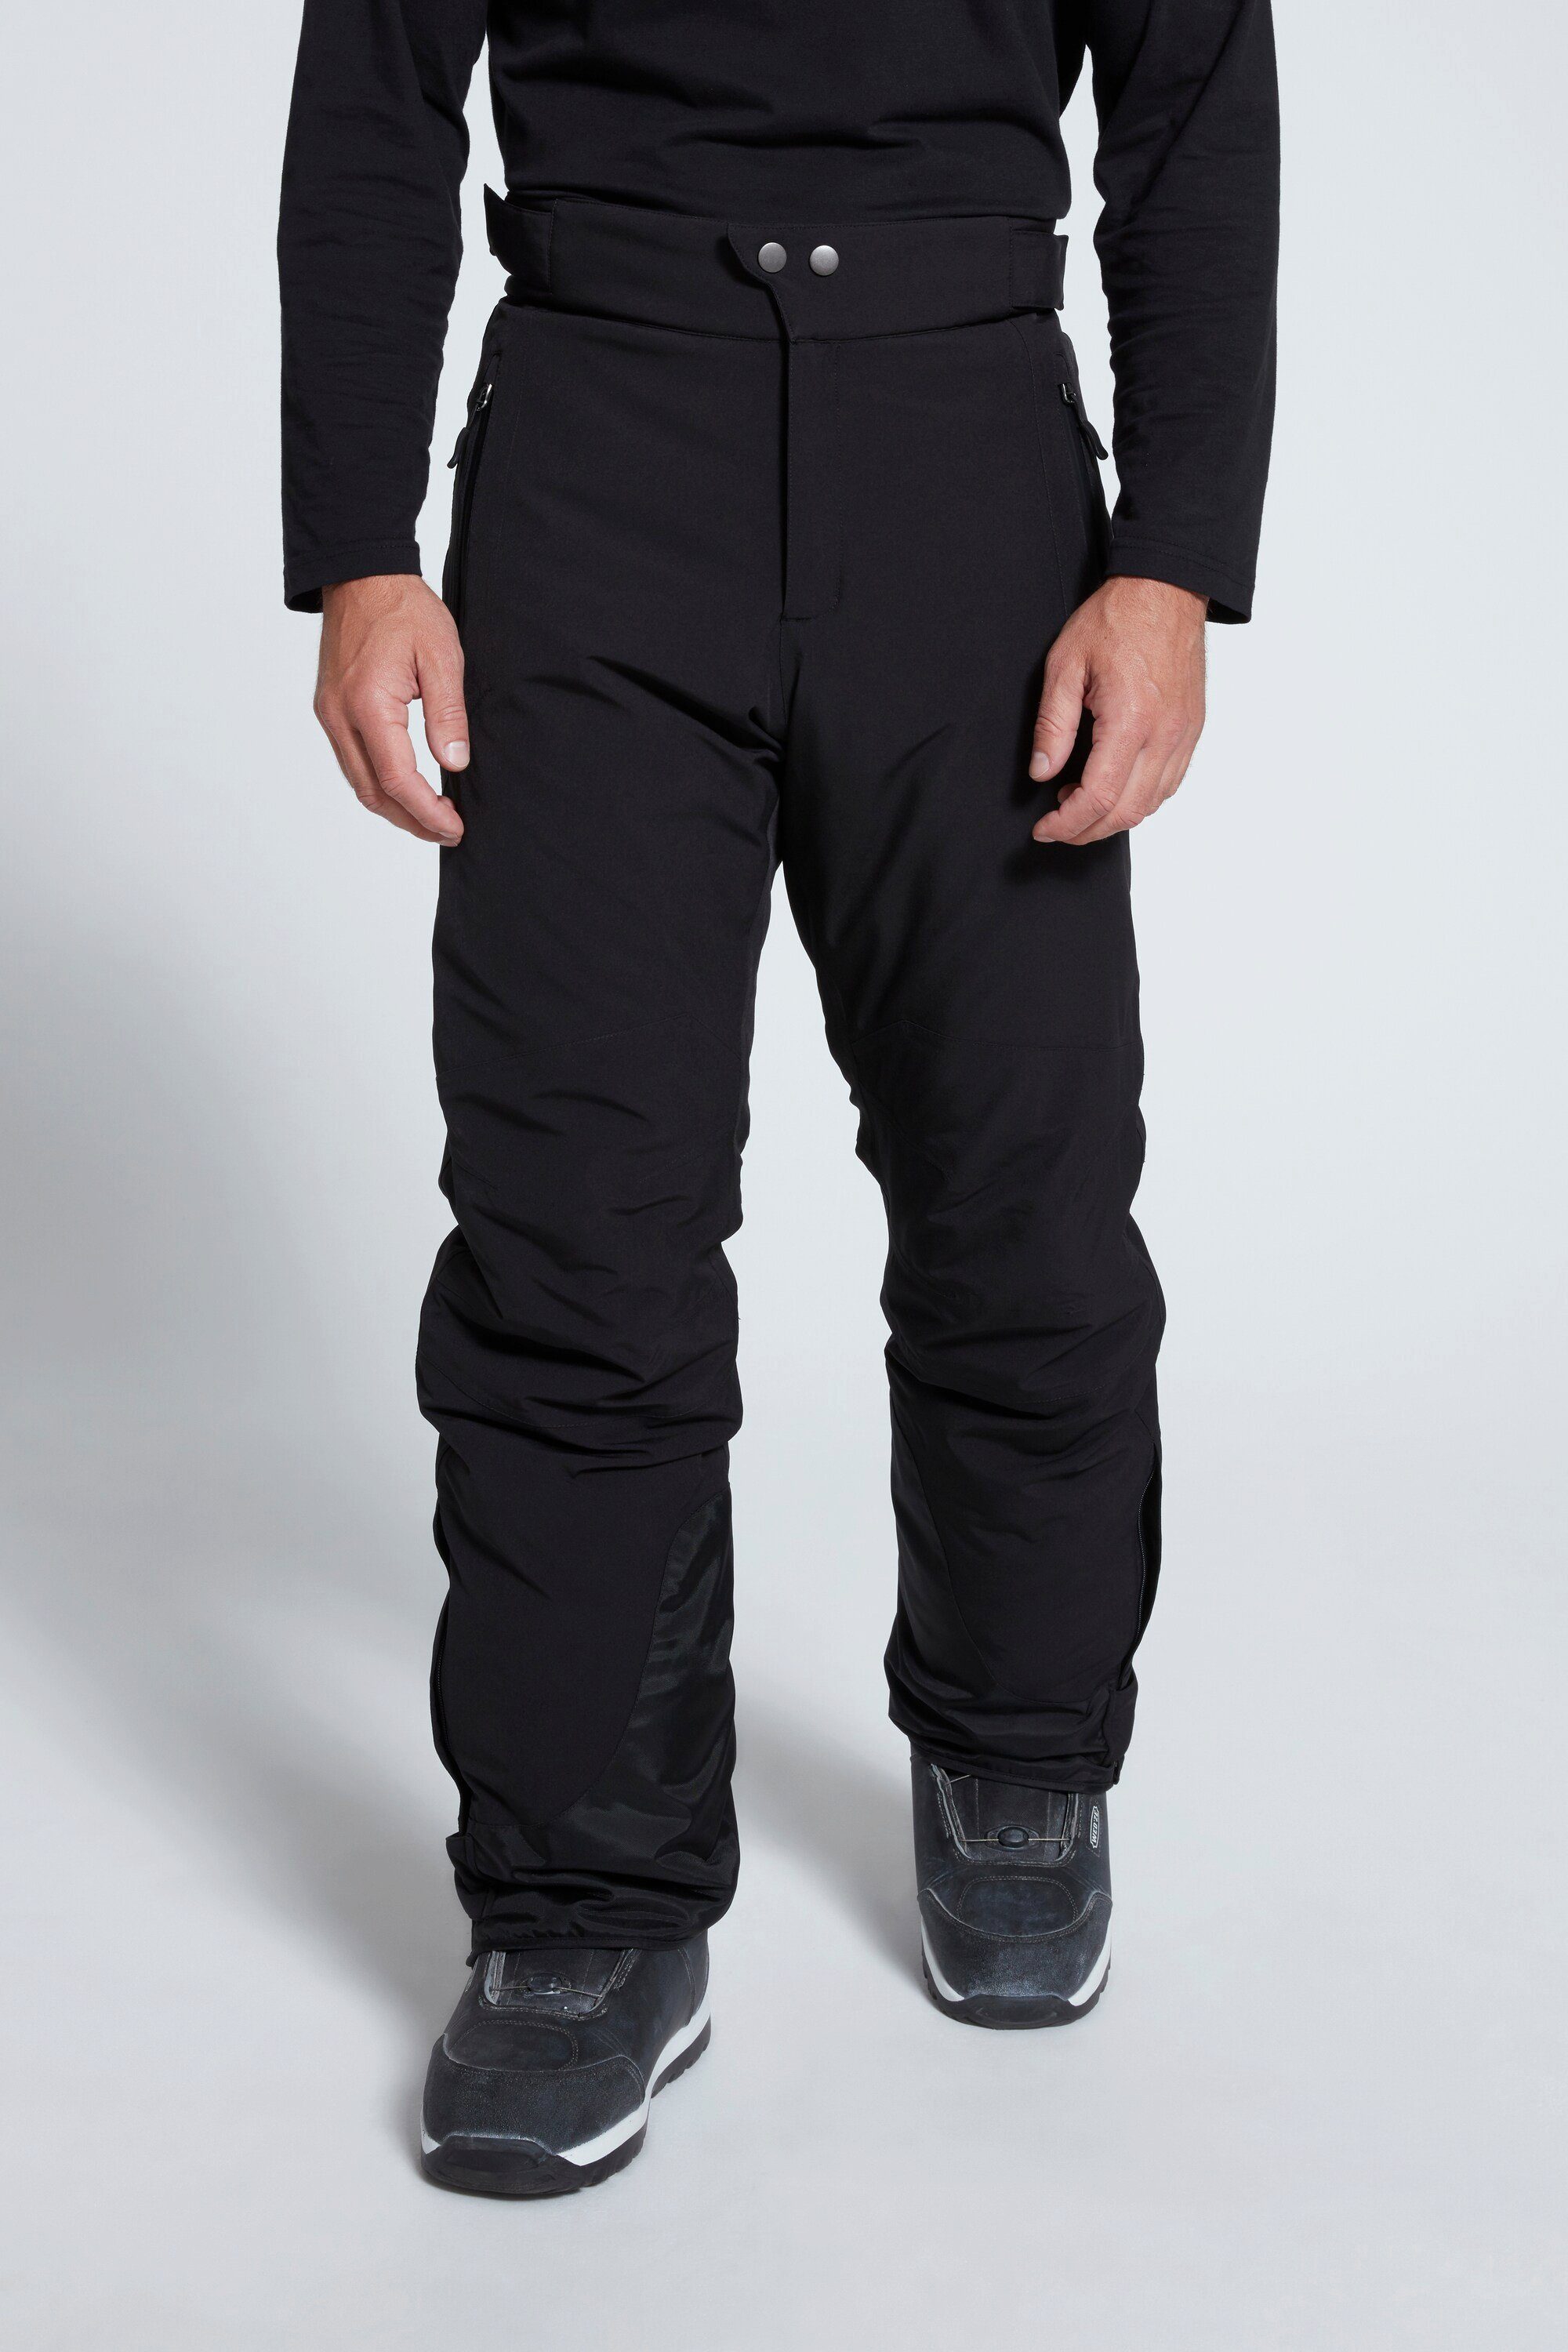 Skihose Funktions-Qualität Bauchfit Skihose JP1880 schwarz Skiwear